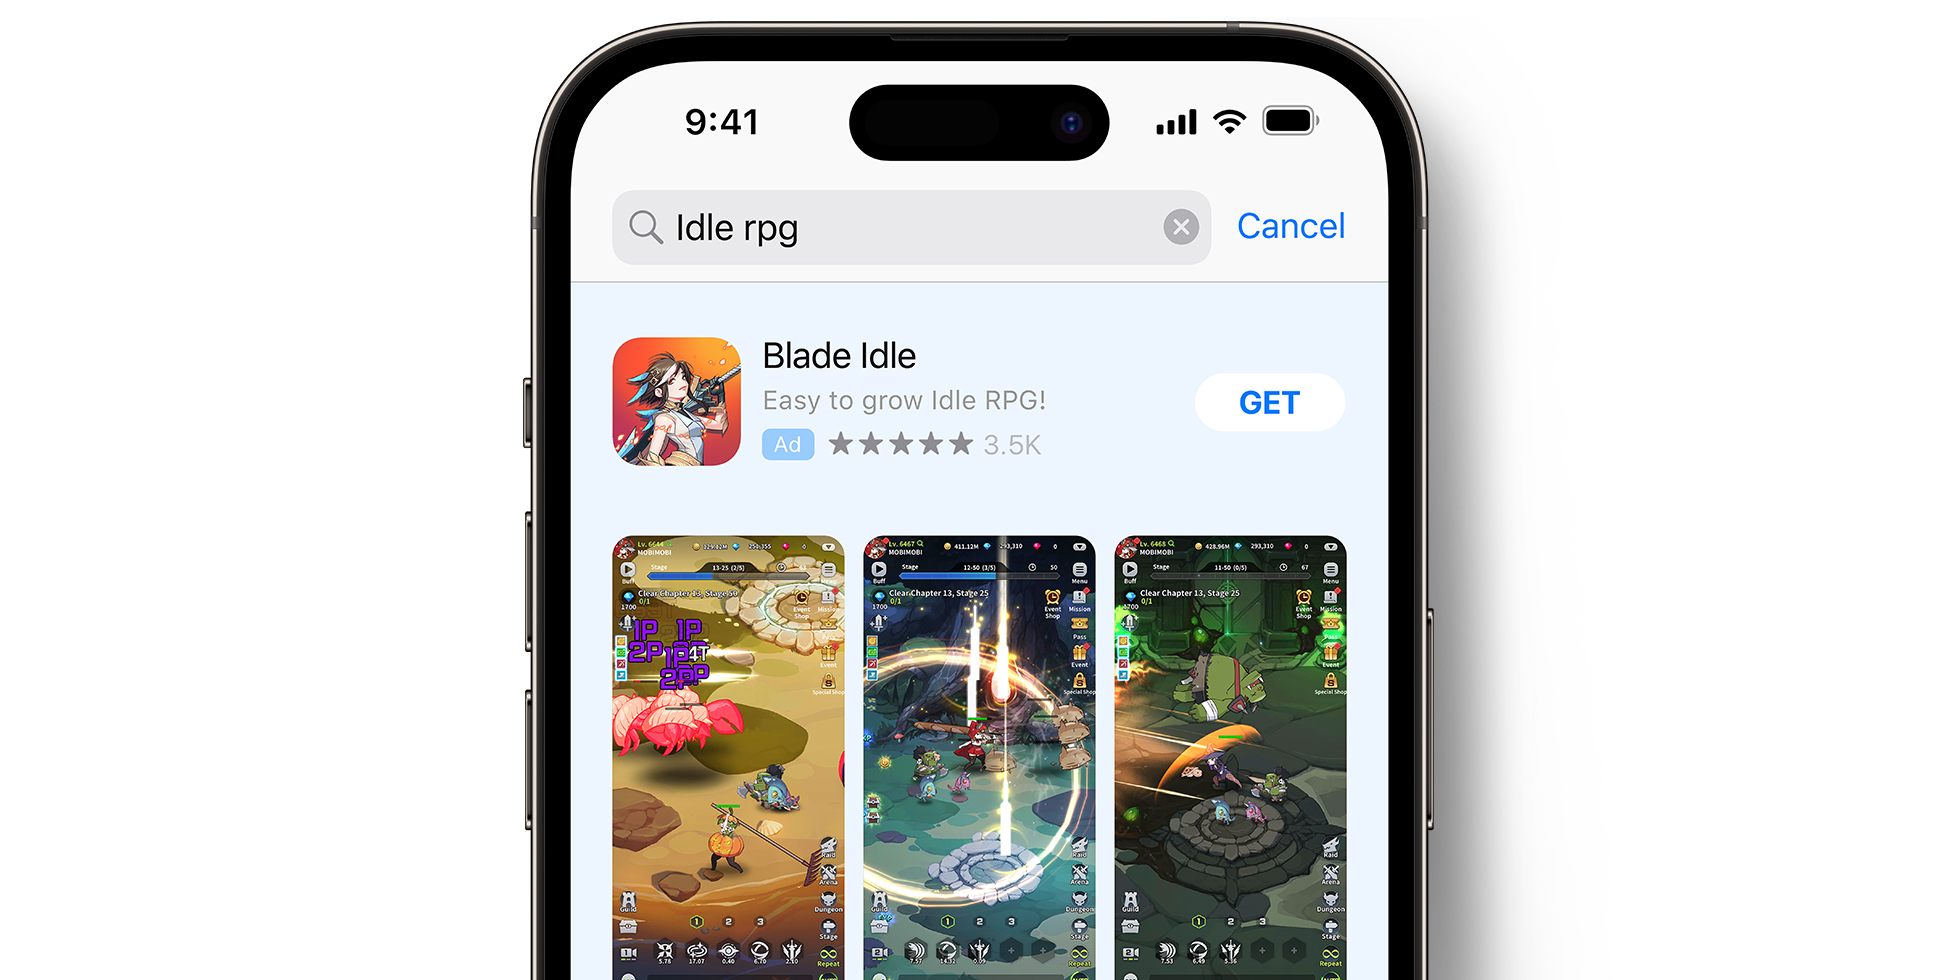 Blade Idle Anzeige im App Store